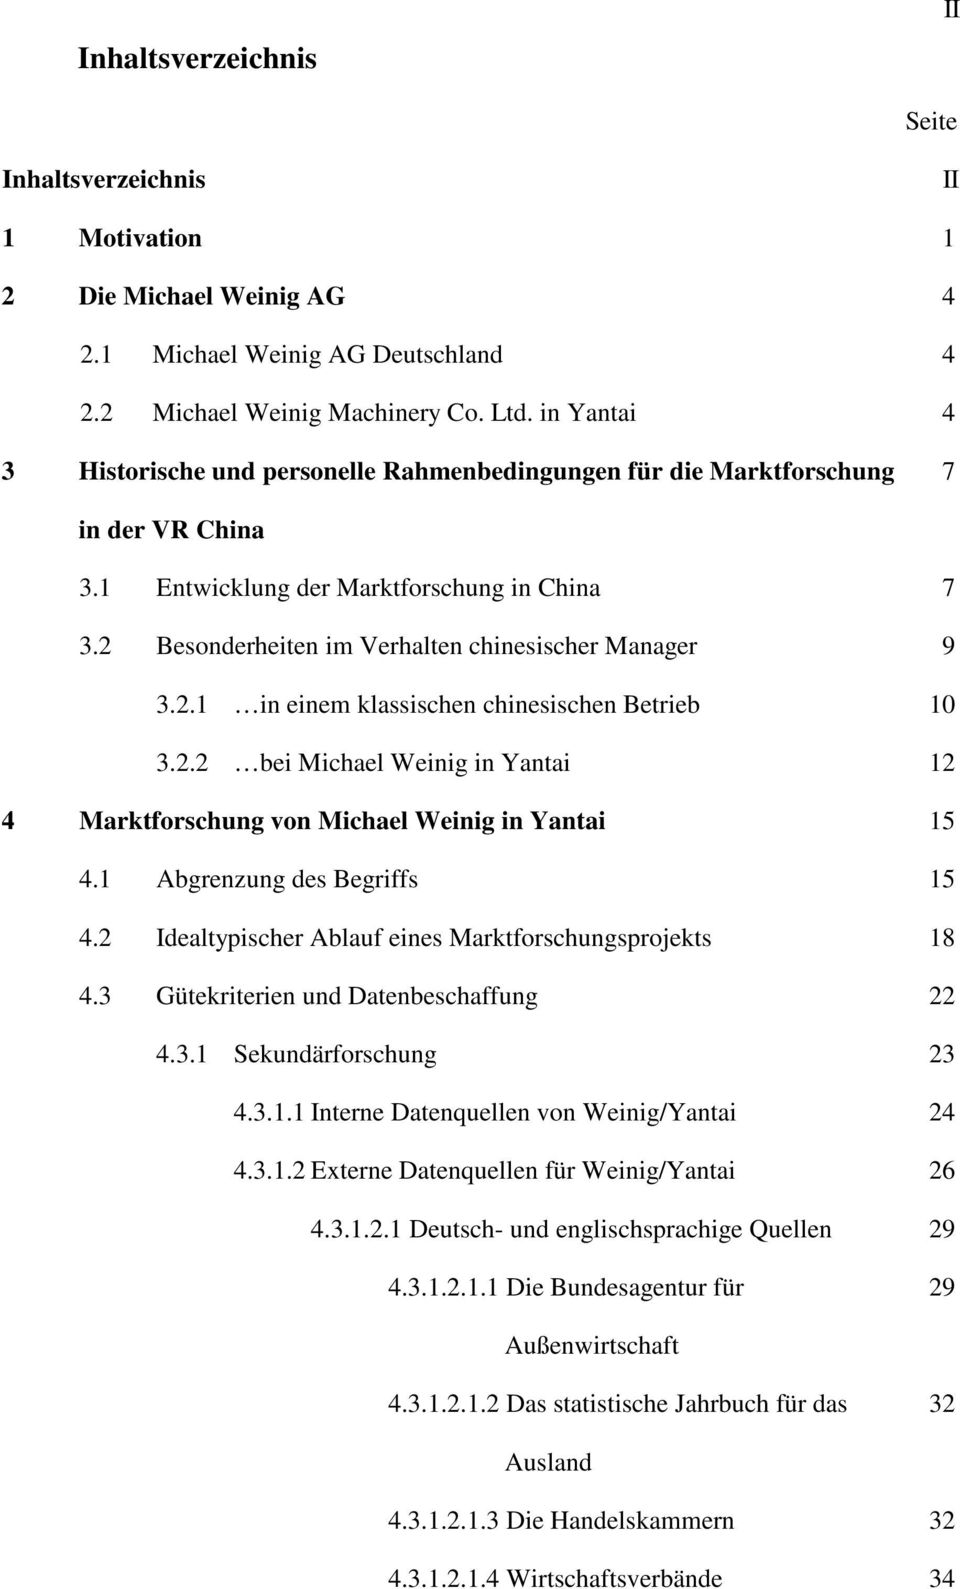 2 Besonderheiten im Verhalten chinesischer Manager 9 3.2.1 in einem klassischen chinesischen Betrieb 10 3.2.2 bei Michael Weinig in Yantai 12 4 Marktforschung von Michael Weinig in Yantai 15 4.